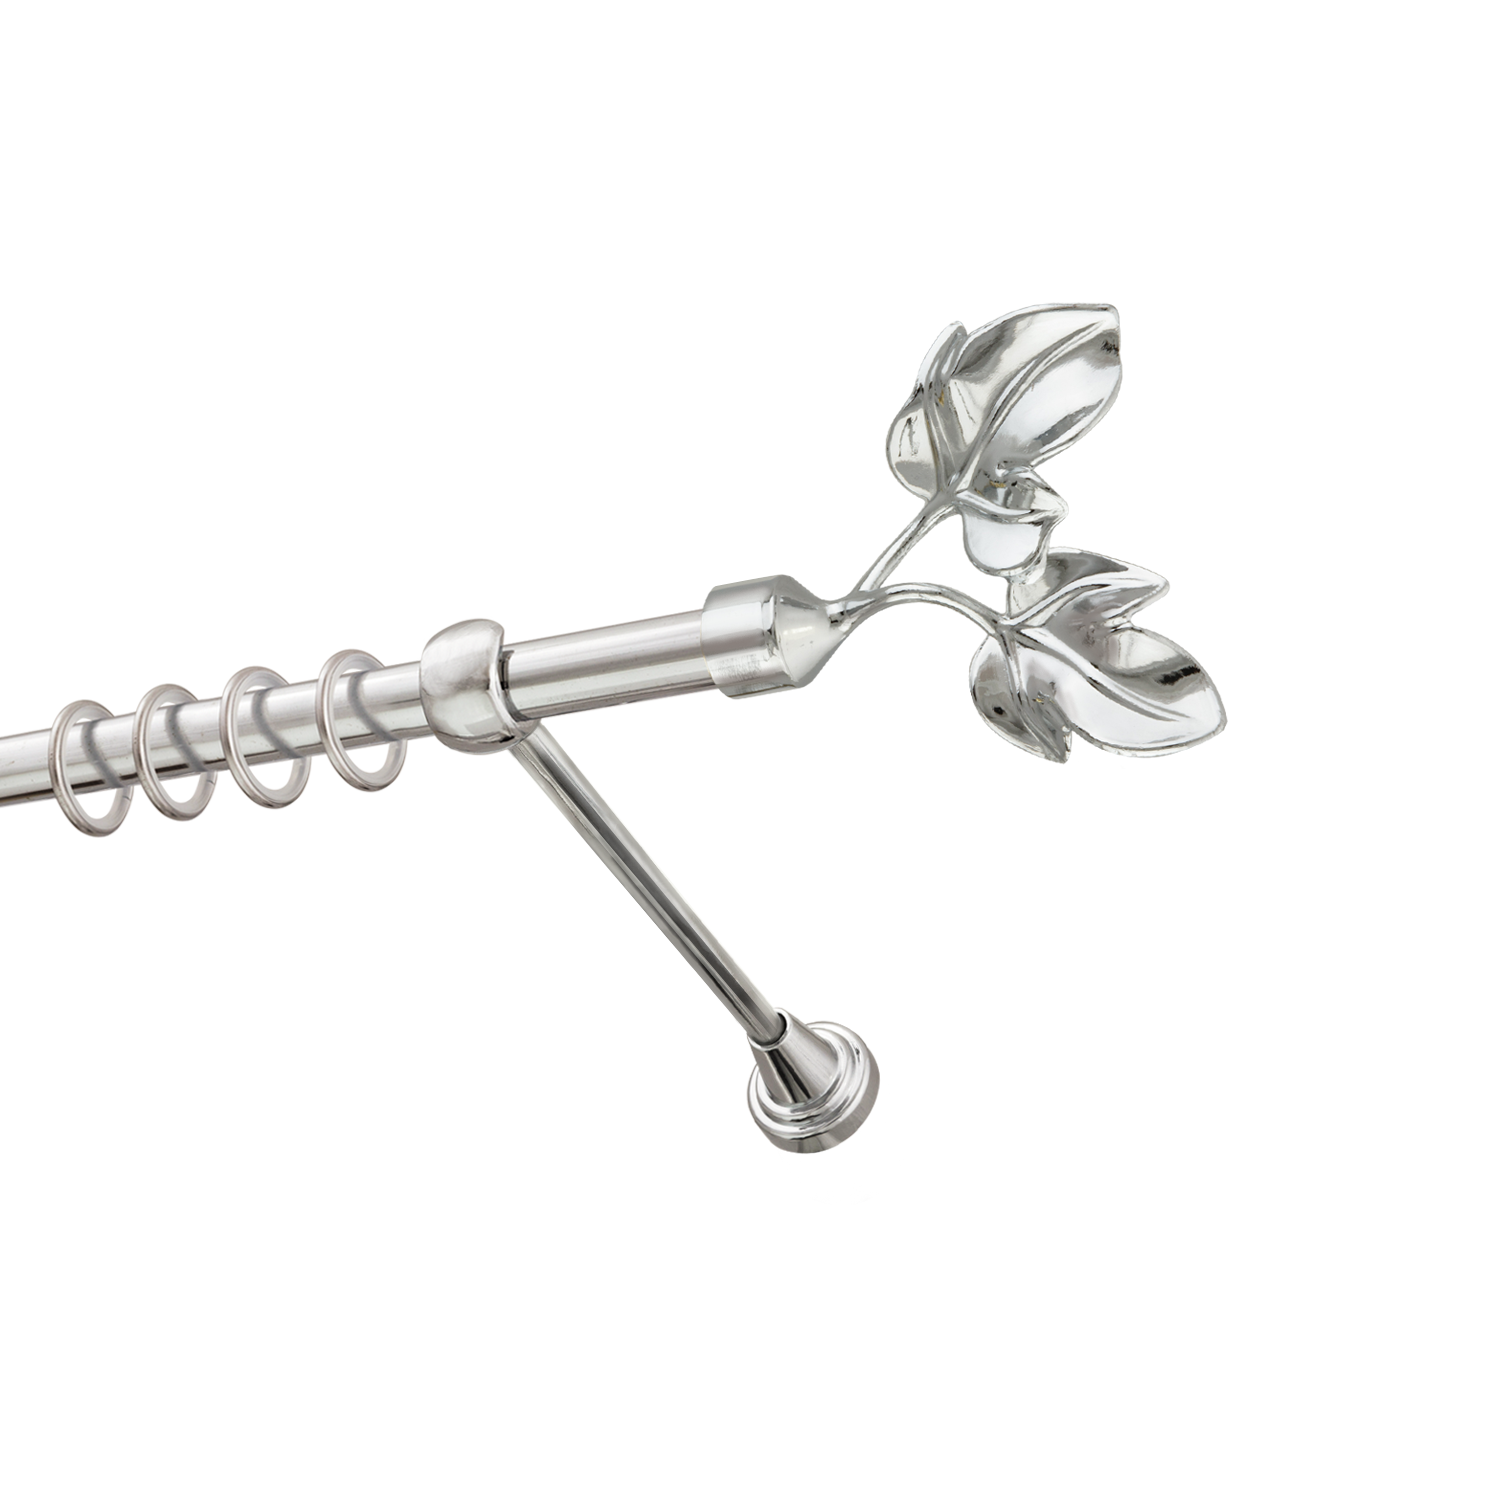 Металлический карниз для штор Листья, однорядный 16 мм, серебро, гладкая штанга, длина 160 см - фото Wikidecor.ru